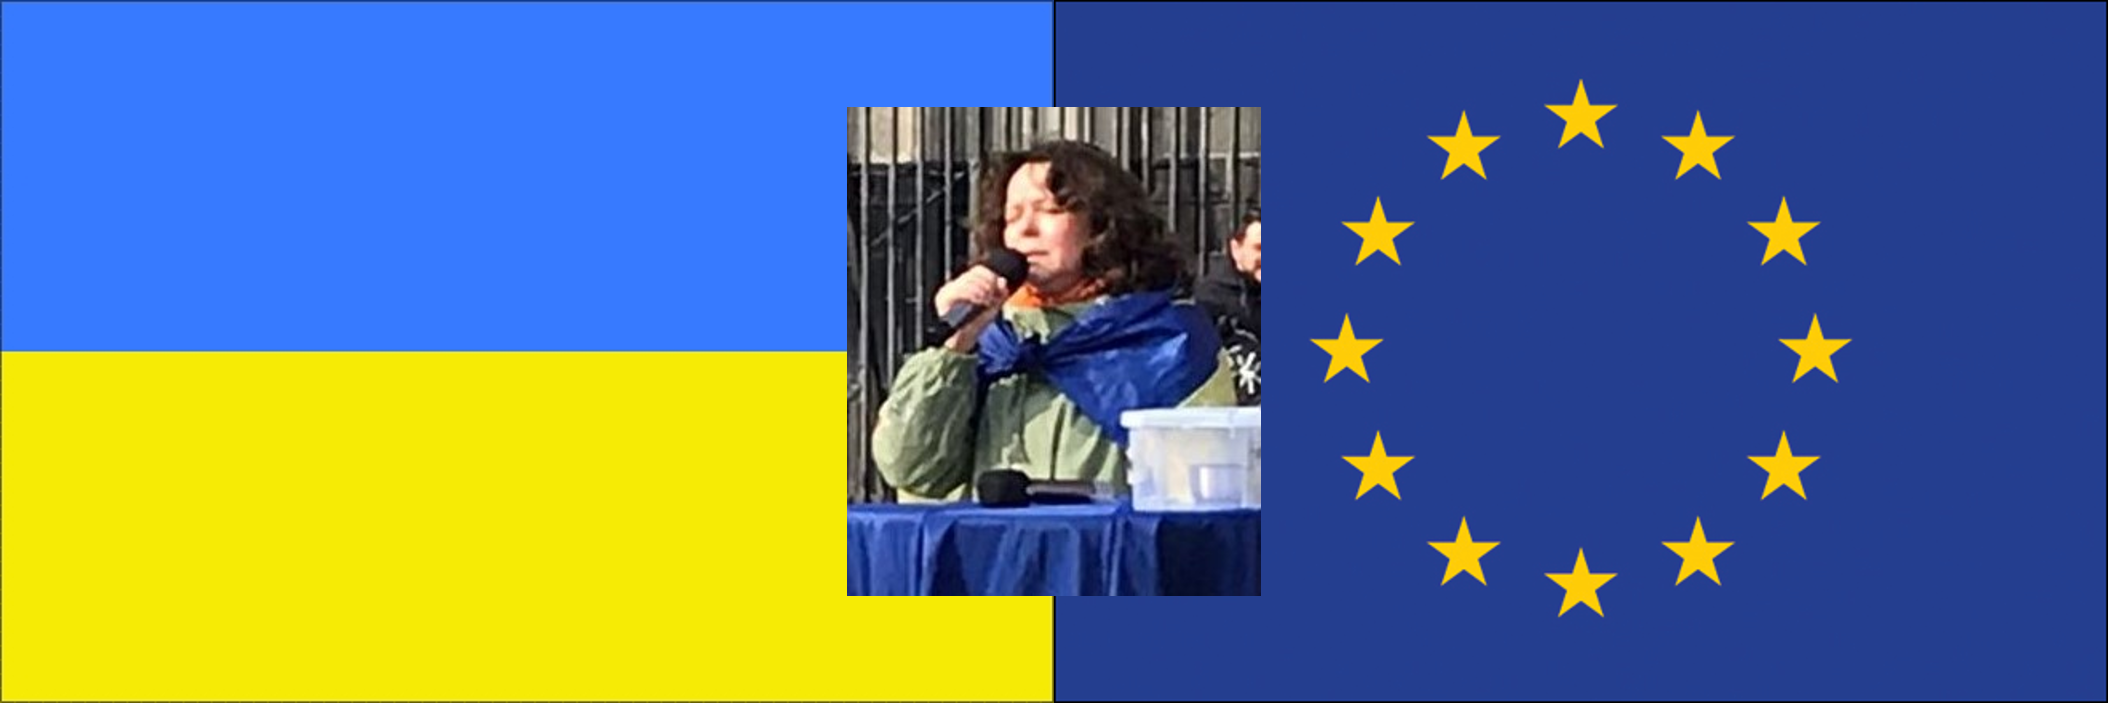 24.02.2023 um 18:00 Uhr    Wenn Worte stocken, klingt Musik     Solidaritätskonzert Ukraine